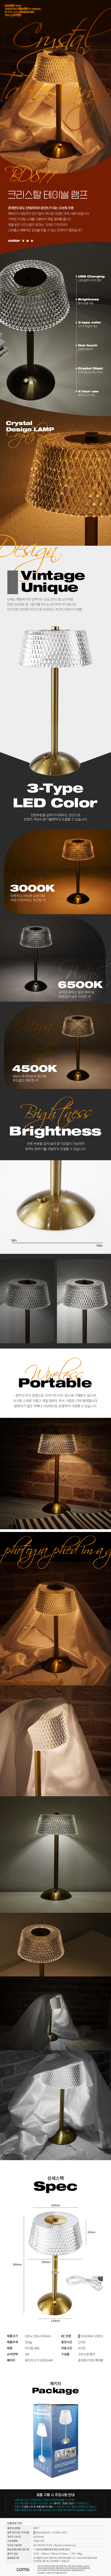 크리스탈 테이블 램프 LED 조명 감성인테리어 유니크 빈티지 무선 충전식 투명 밝기조절